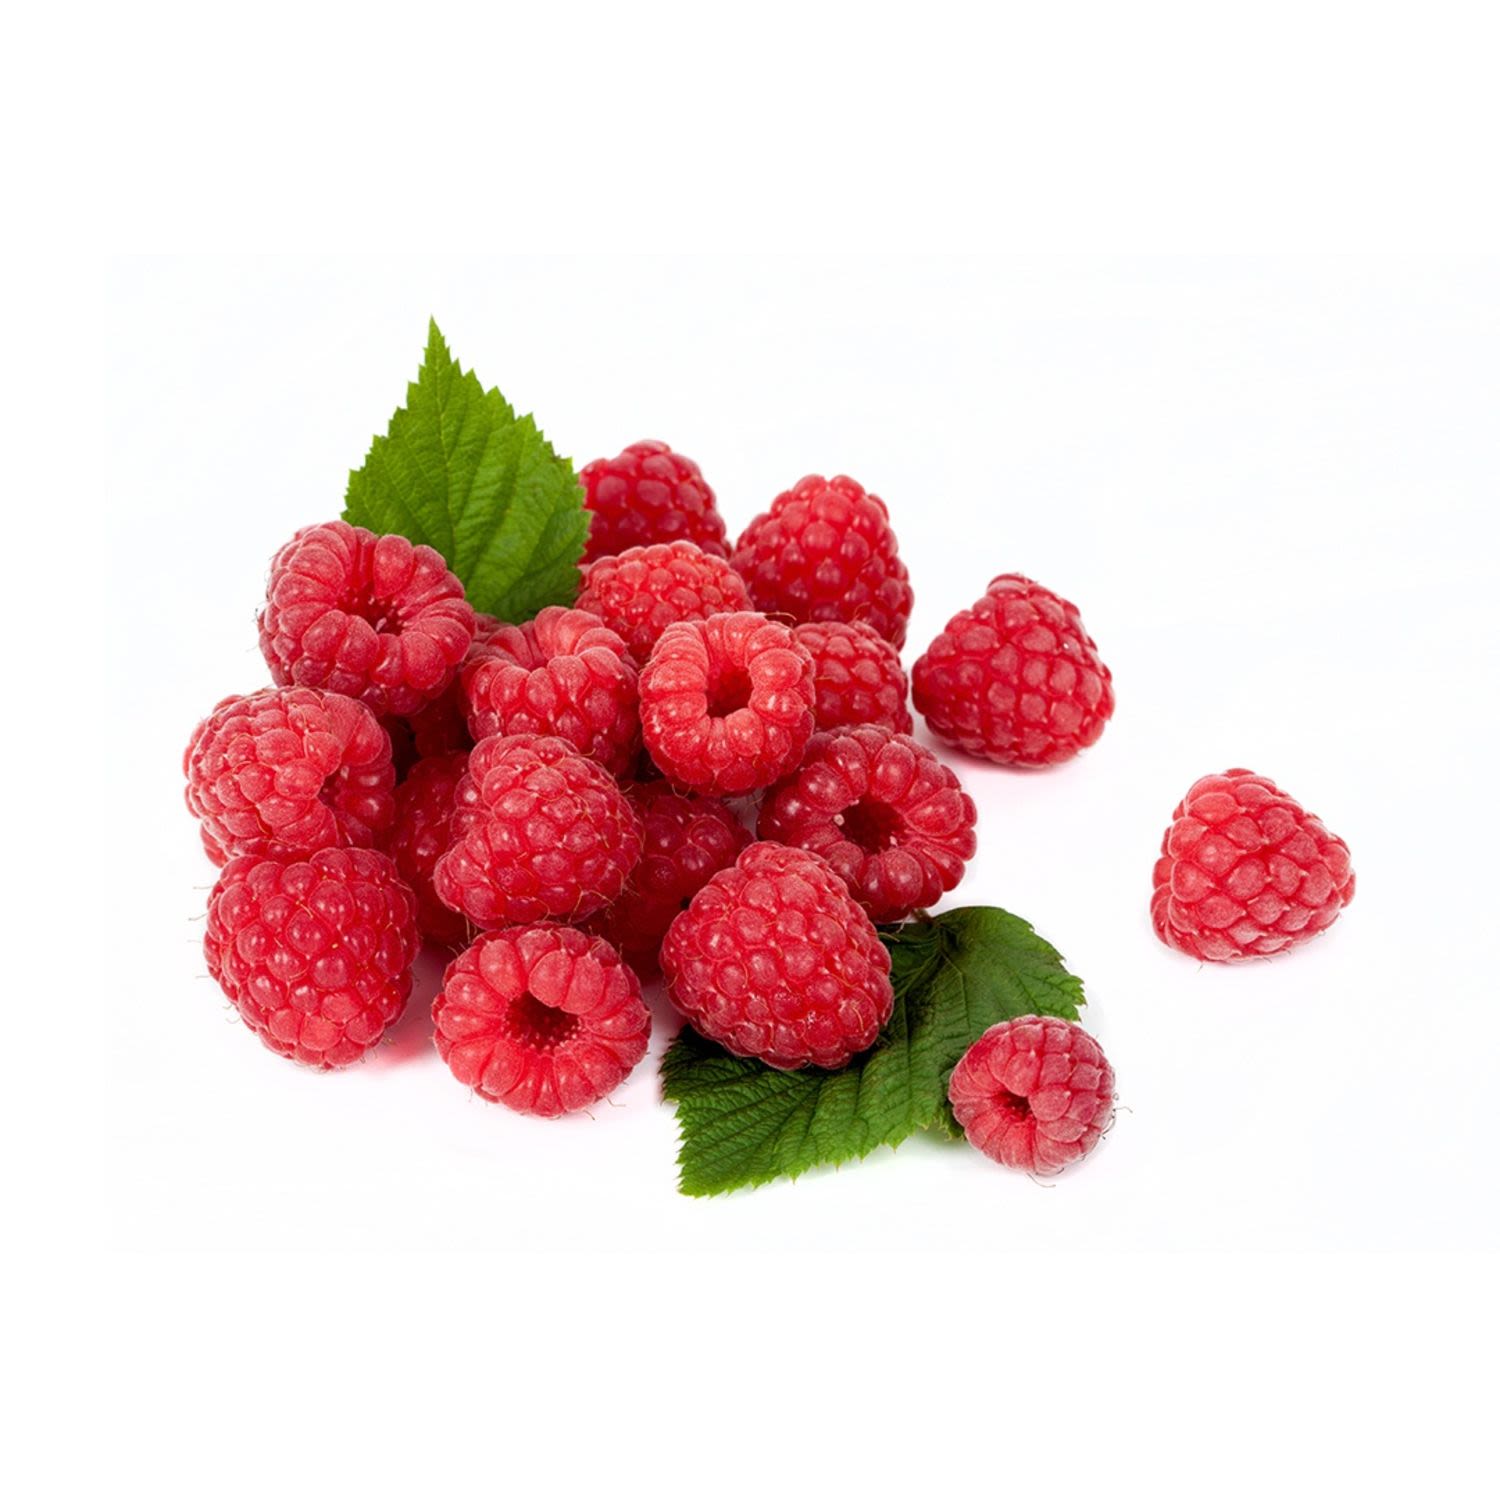 Raspberries Punnet, 1 Each